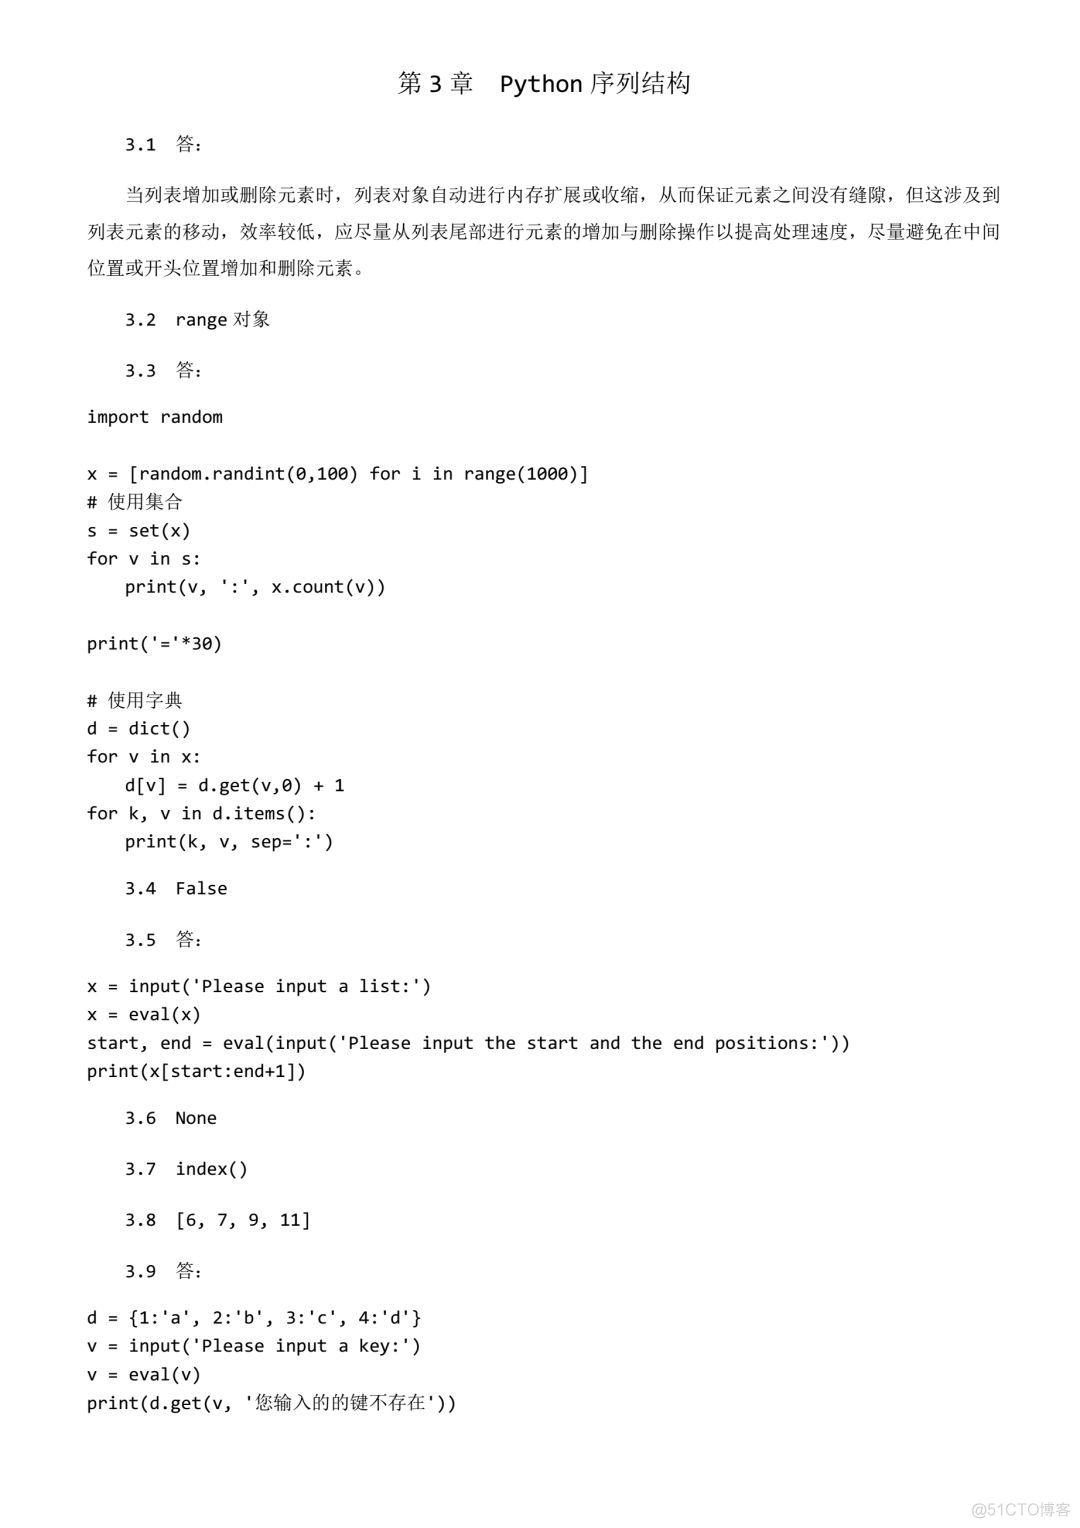 《Python程序设计基础（第2版）》习题答案_程序设计_03